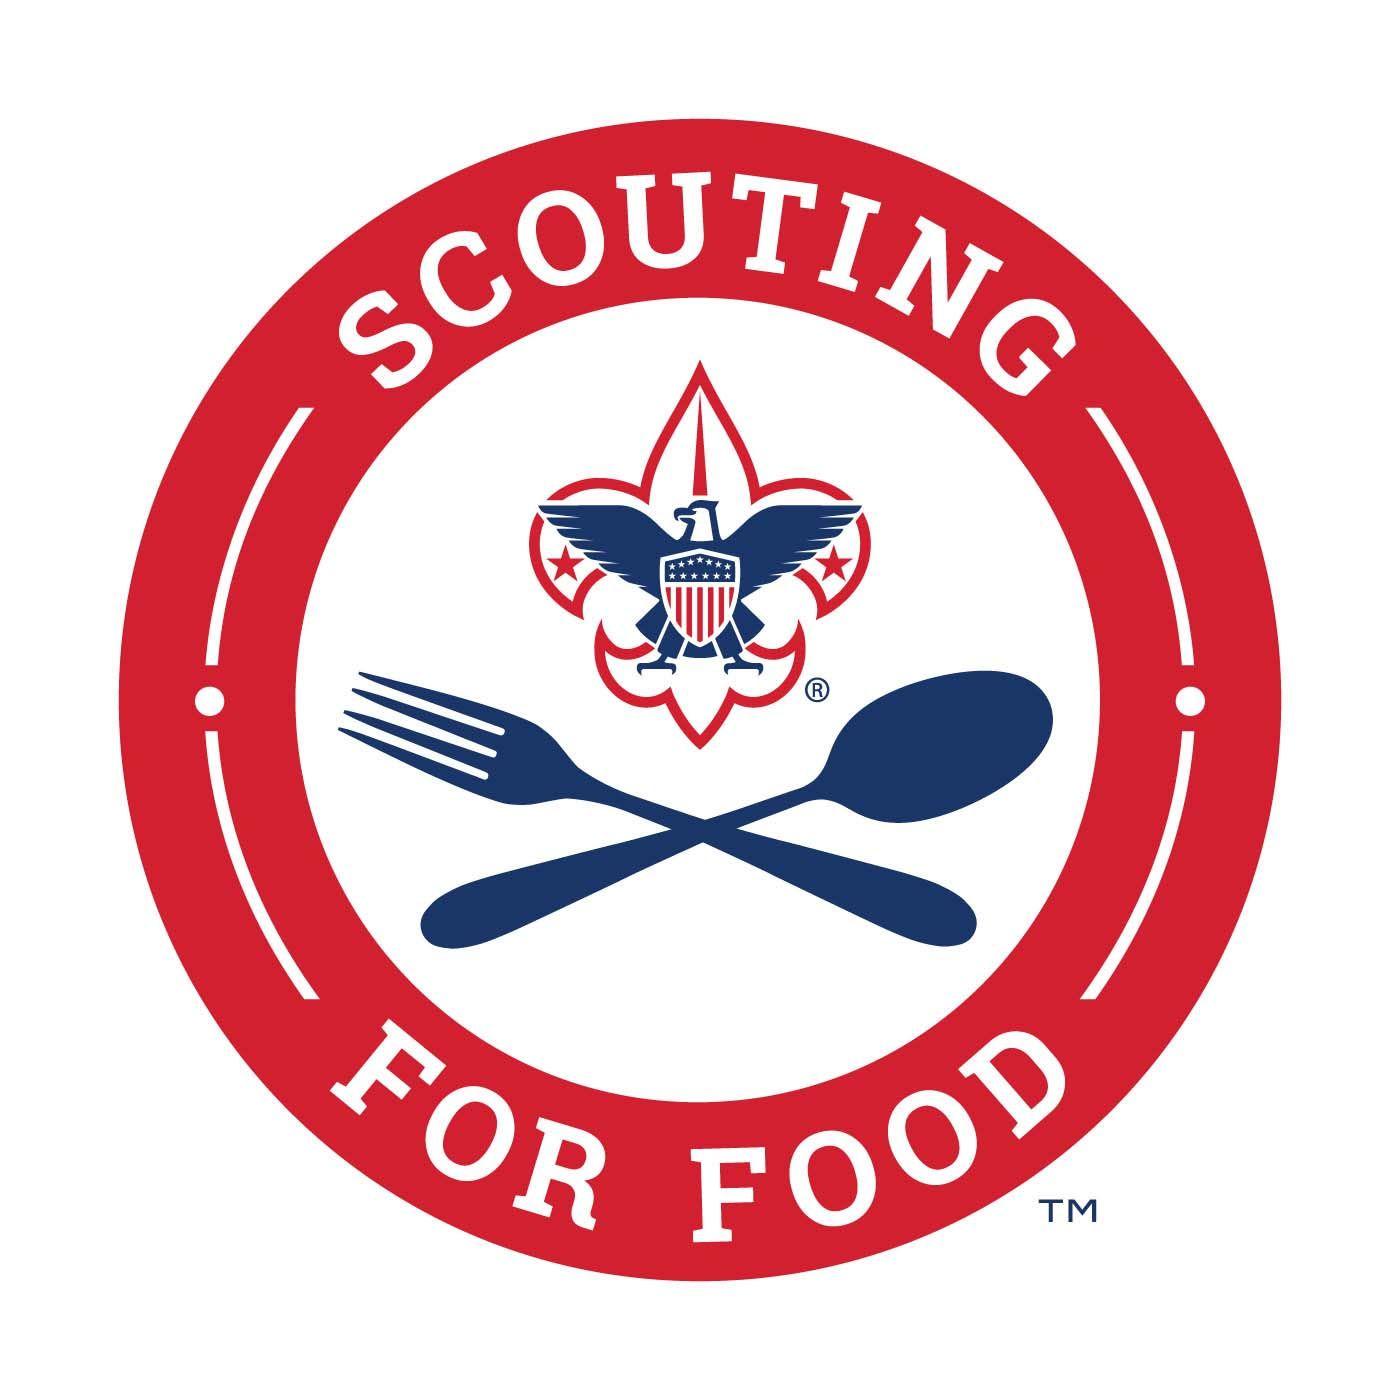 Red Circle Food Logo - Scouting For Food Logo